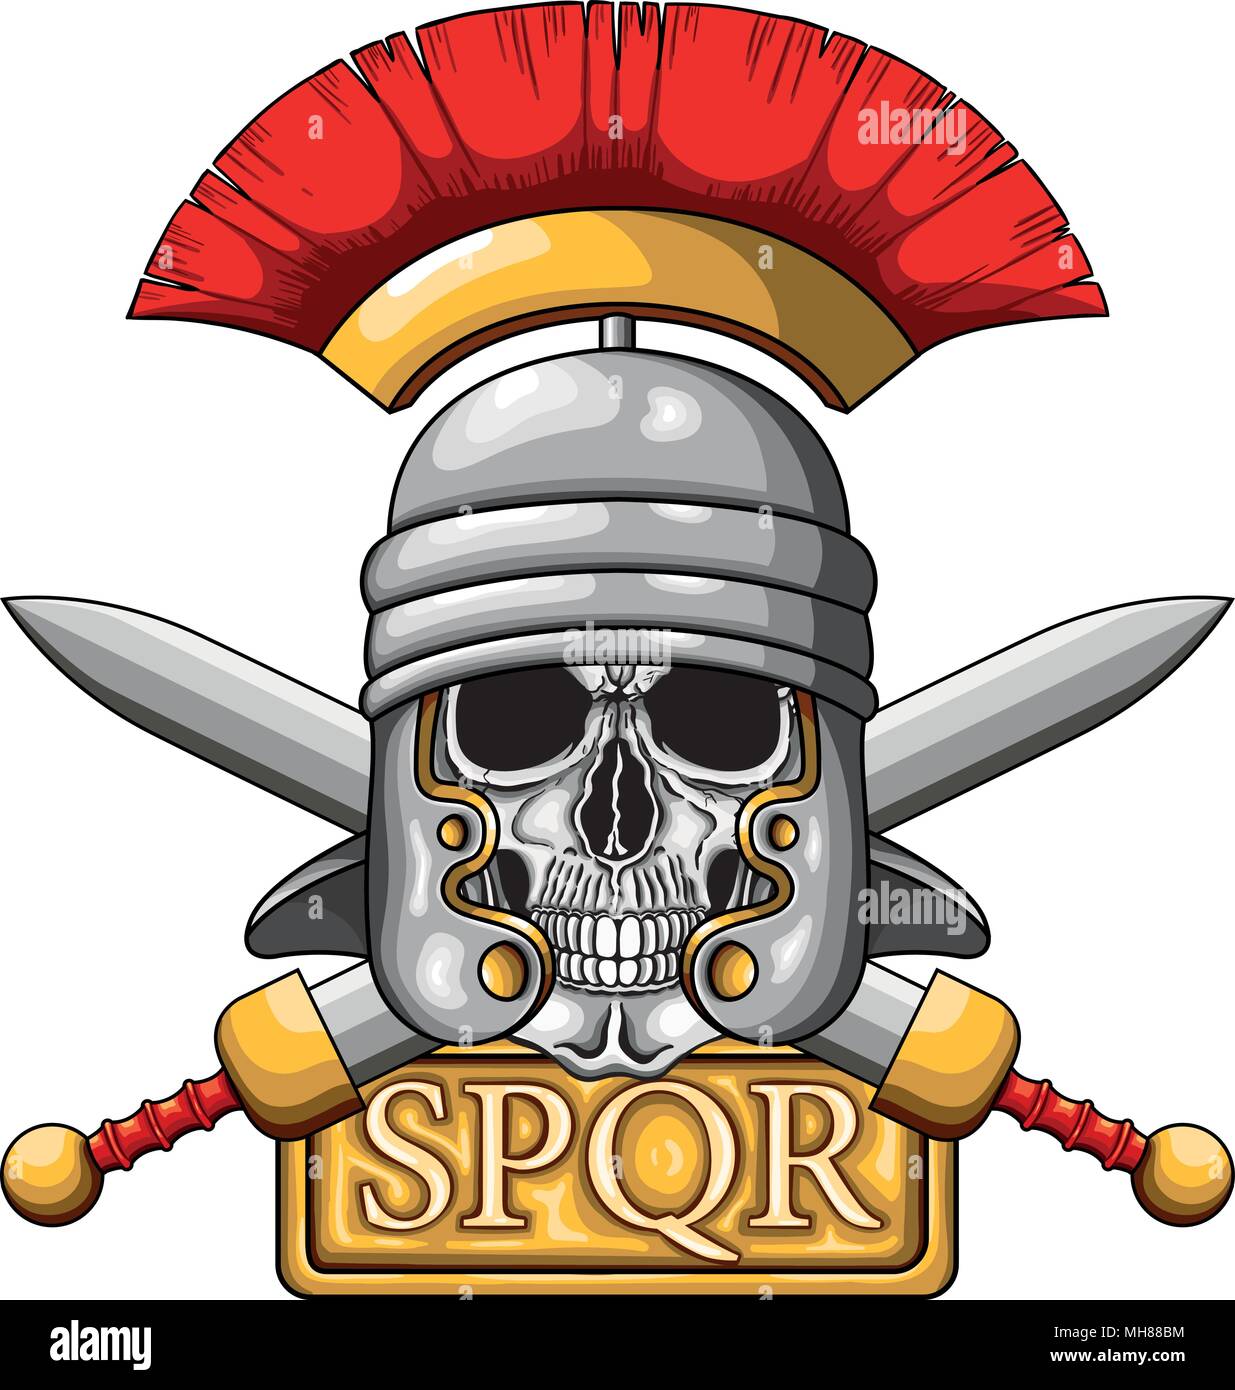 Illustrazione Vettoriale di centurion teschio umano con elmo romano e la  scheda con la parola SPQR, il classico impero romano acronimo che significa  "enatus populusq Immagine e Vettoriale - Alamy